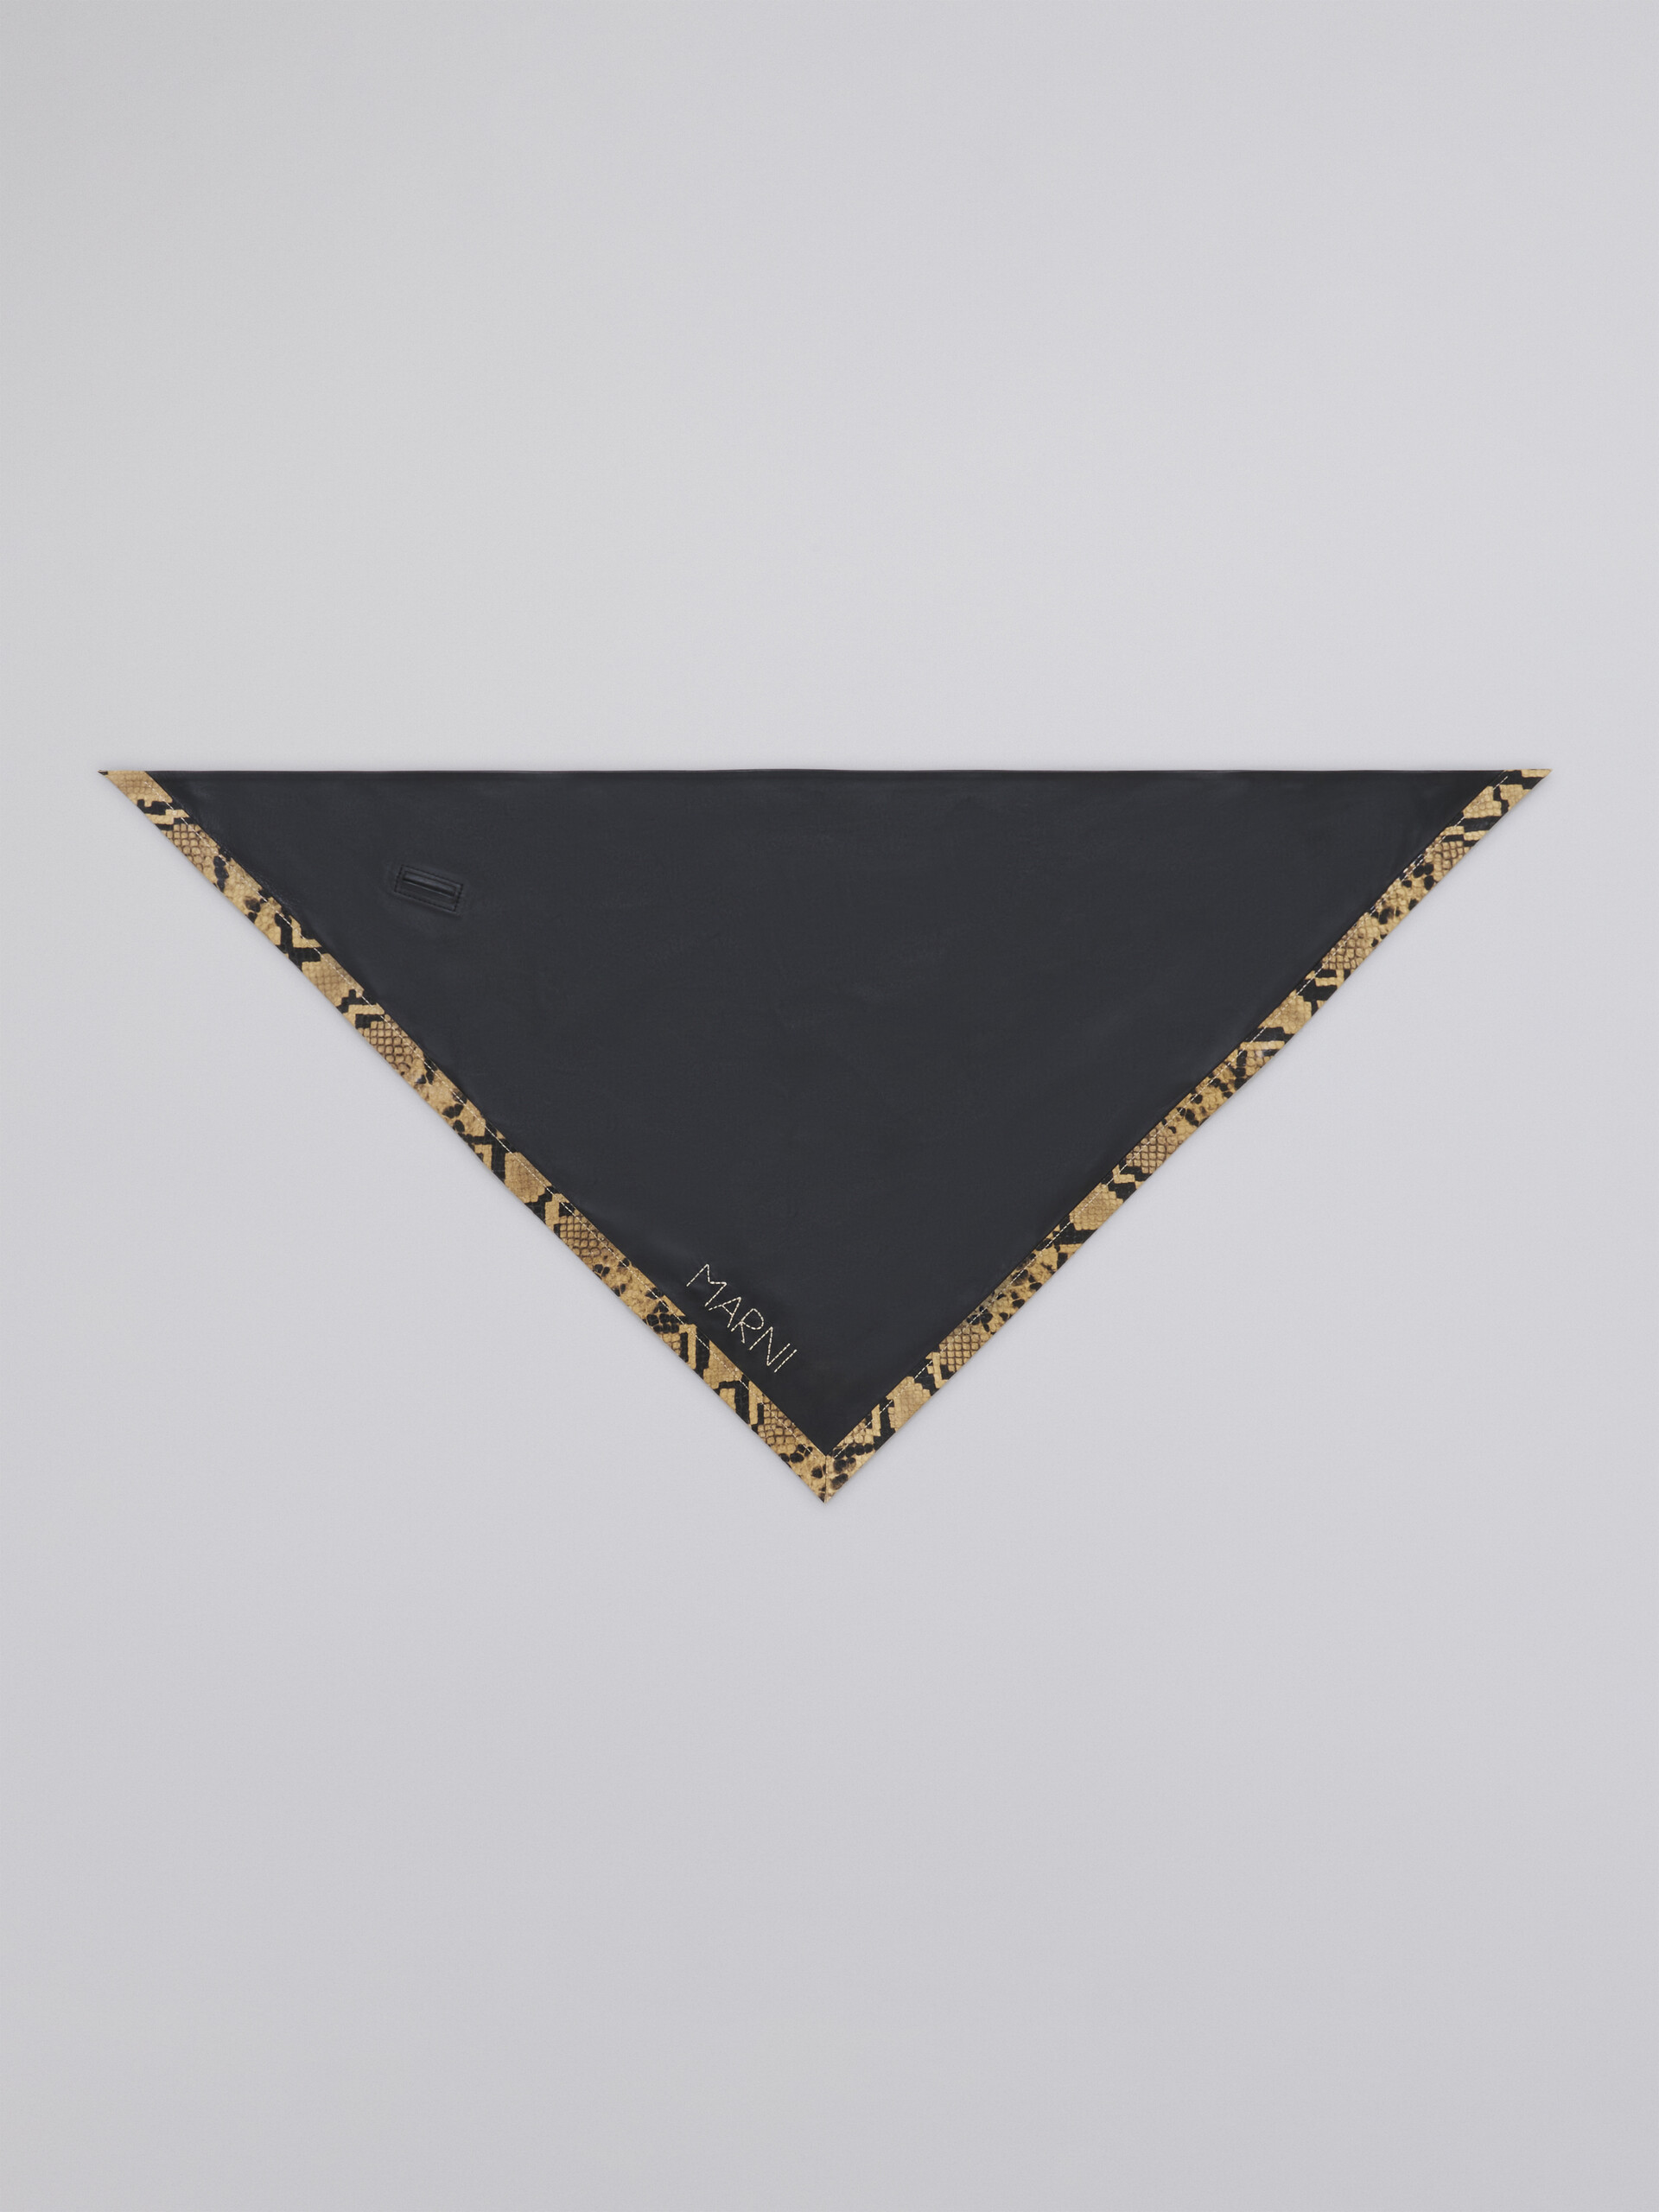 Sciarpa triangolare in nappa nero con bordo in pitone stampato - Altri accessori - Image 3